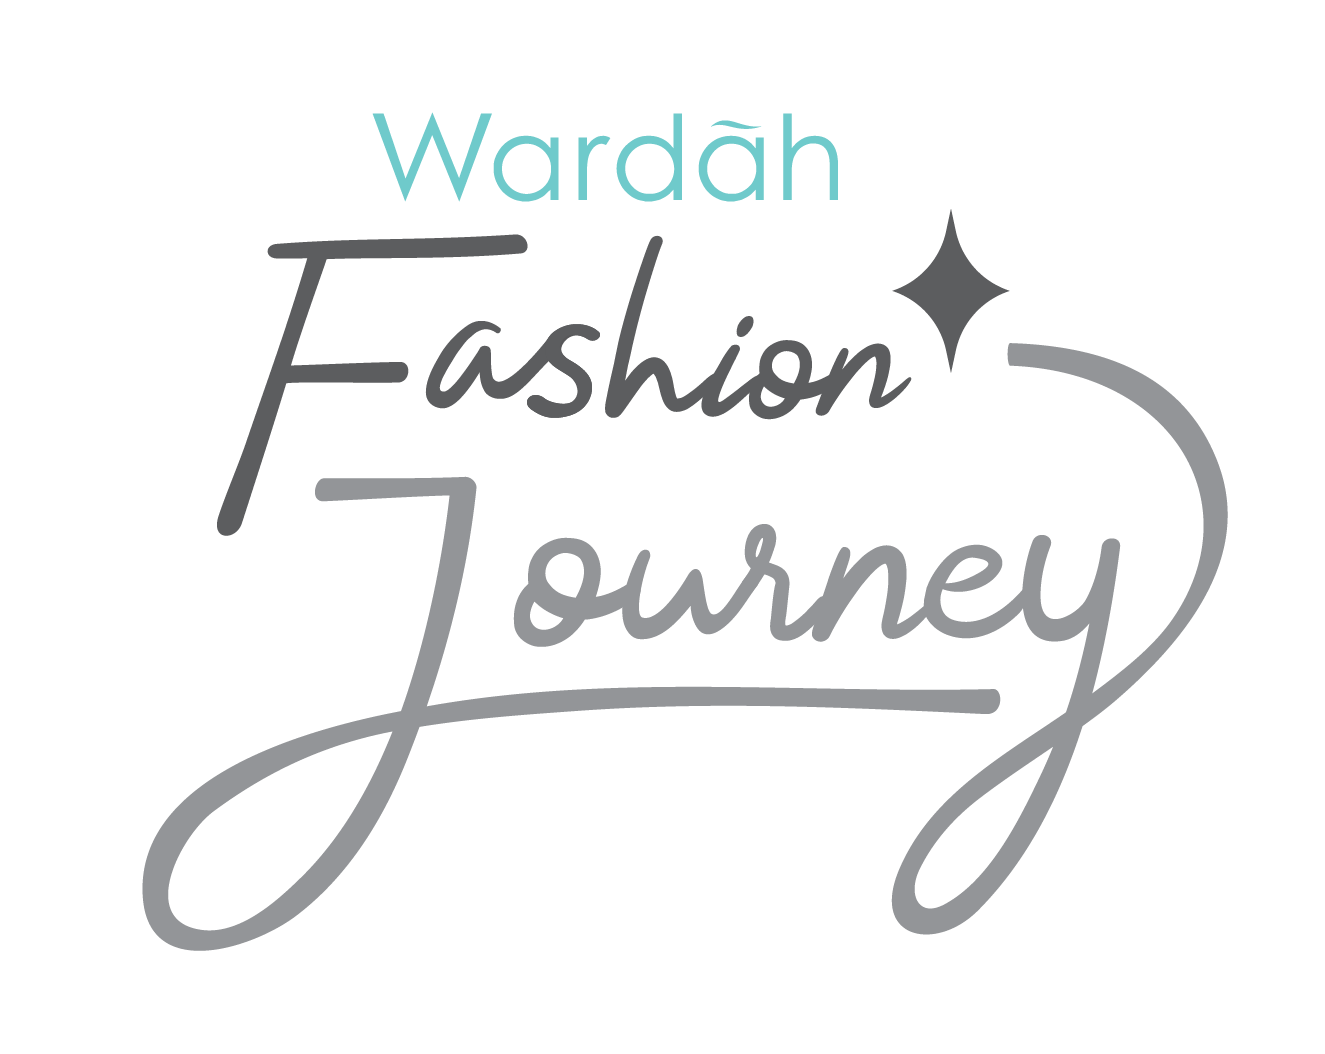 Wardah Fashion Journey